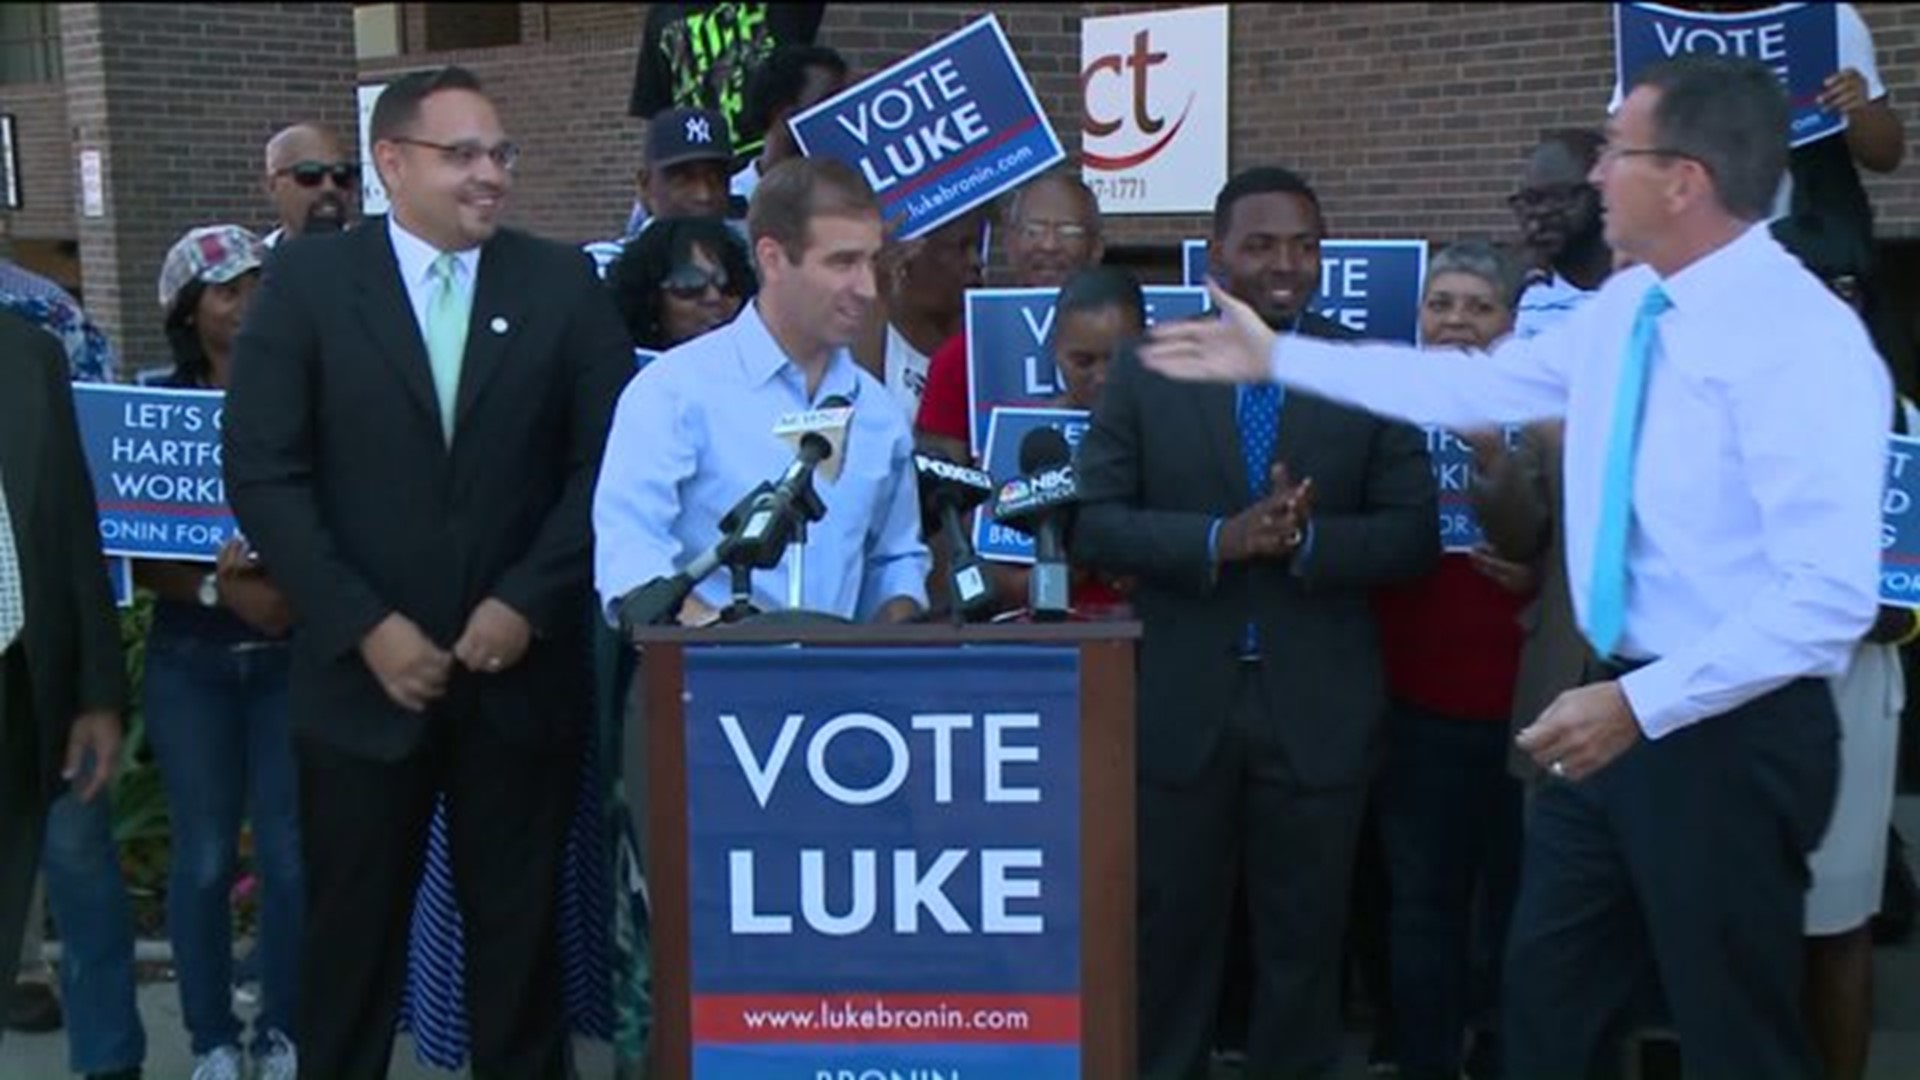 Hartford mayoral candidate Luke Bronin